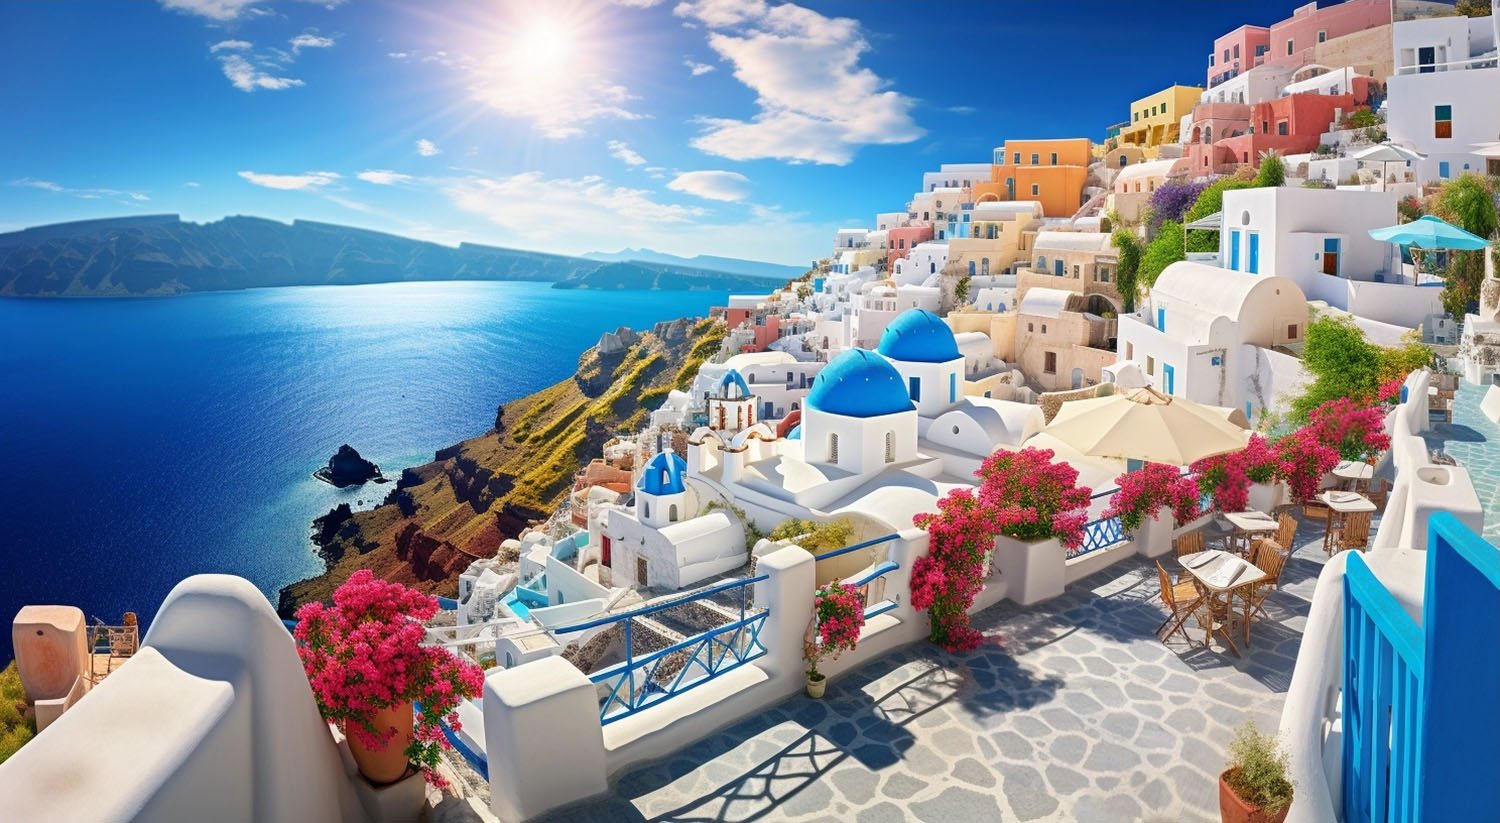 Griechenland - lebendiges Kaleidoskop aus sonnenverwöhnten Stränden, antiken Schätzen, lebendigen Traditionen und atemberaubenden Naturlandschaften